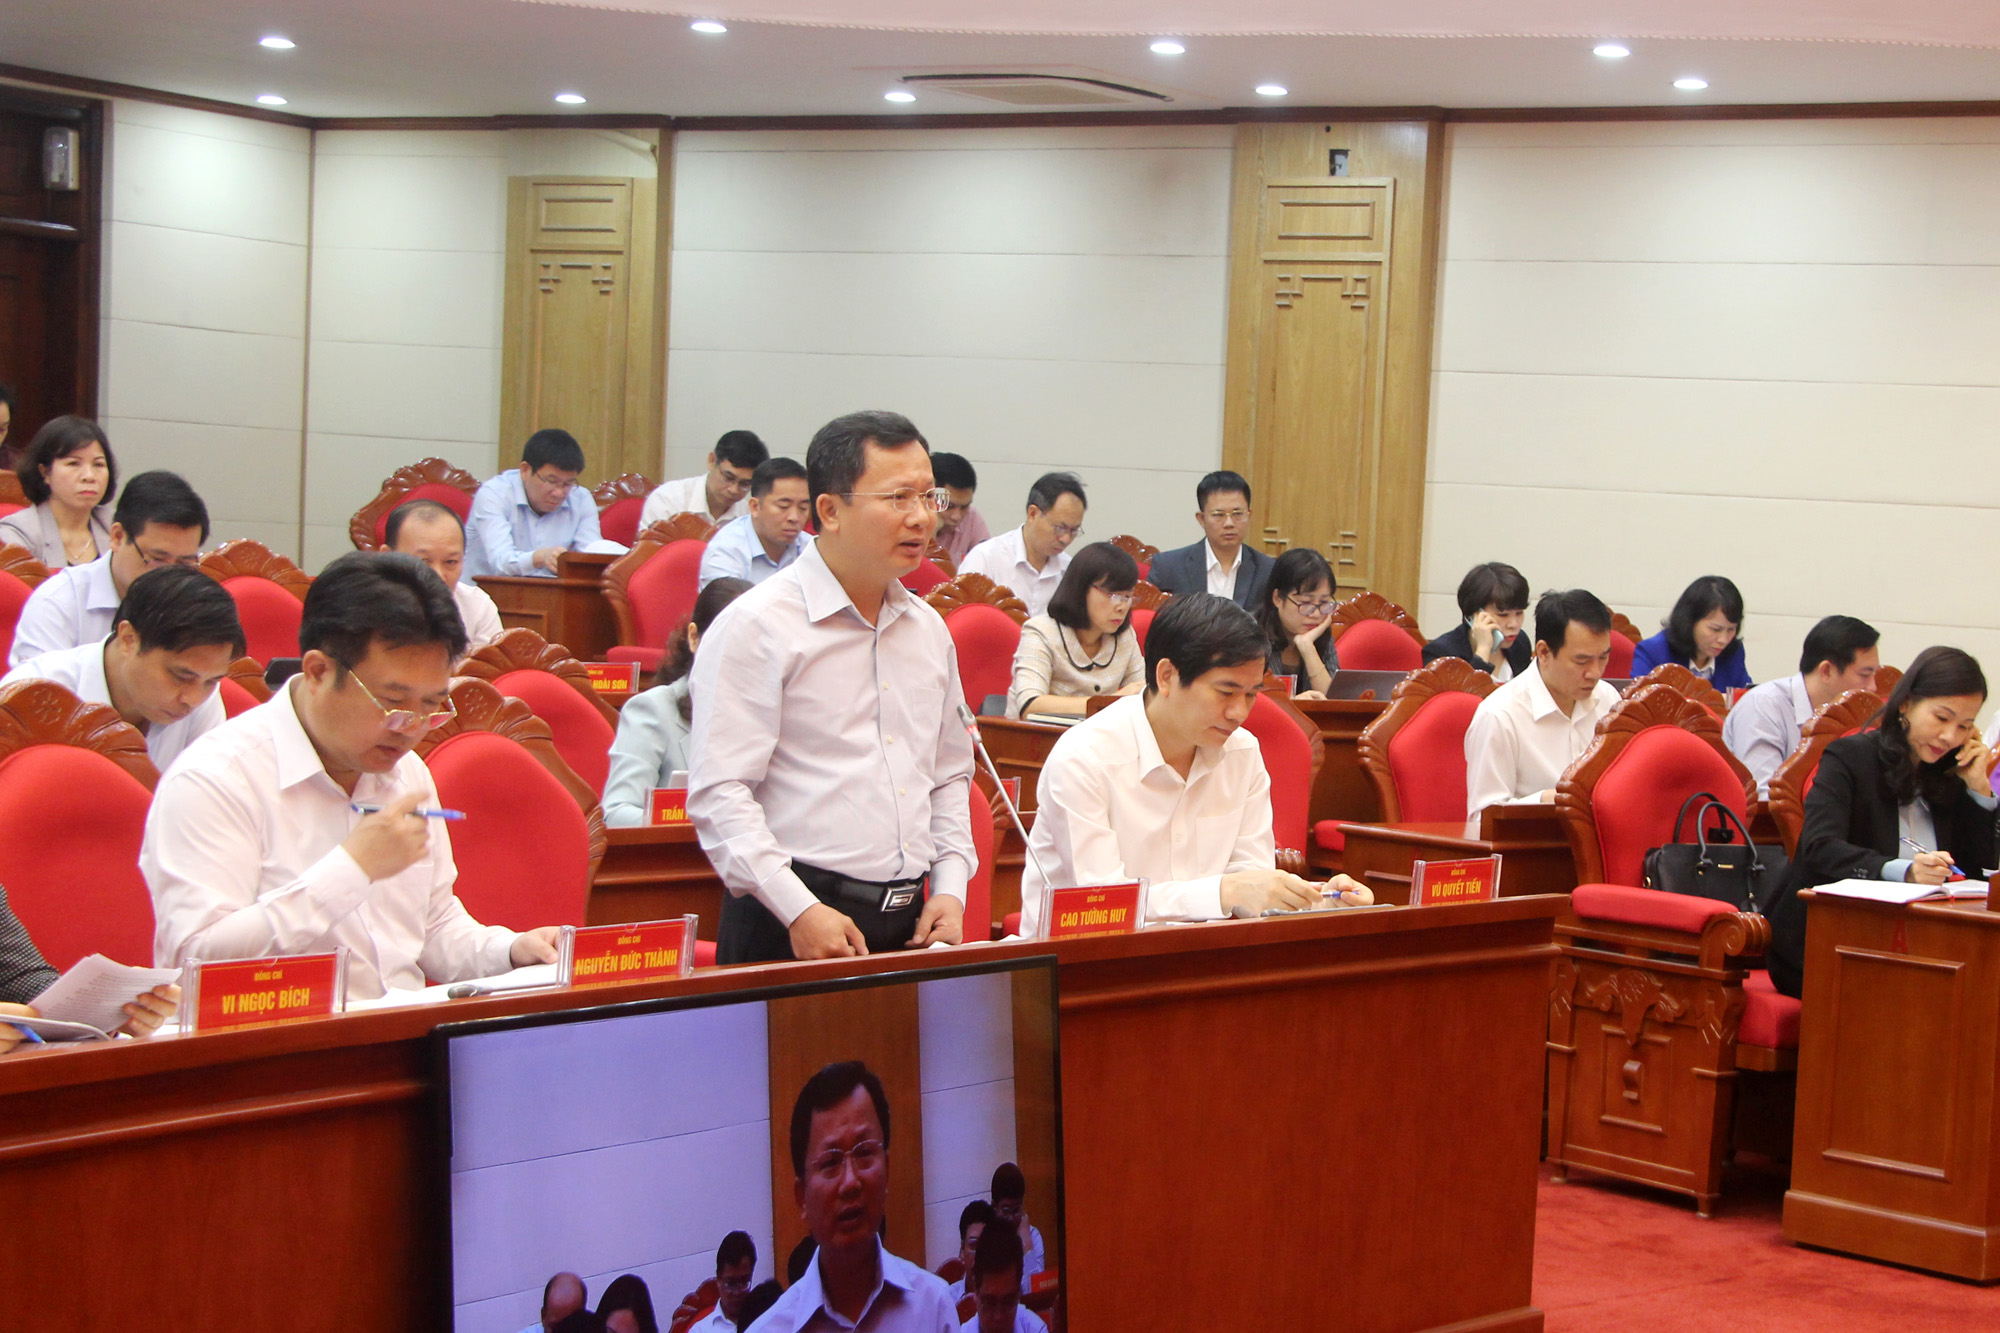 Đồng chí Cao Tường Huy, Phó Chủ tịch Thường trực UBND tỉnh, phát biểu tại hội nghị.